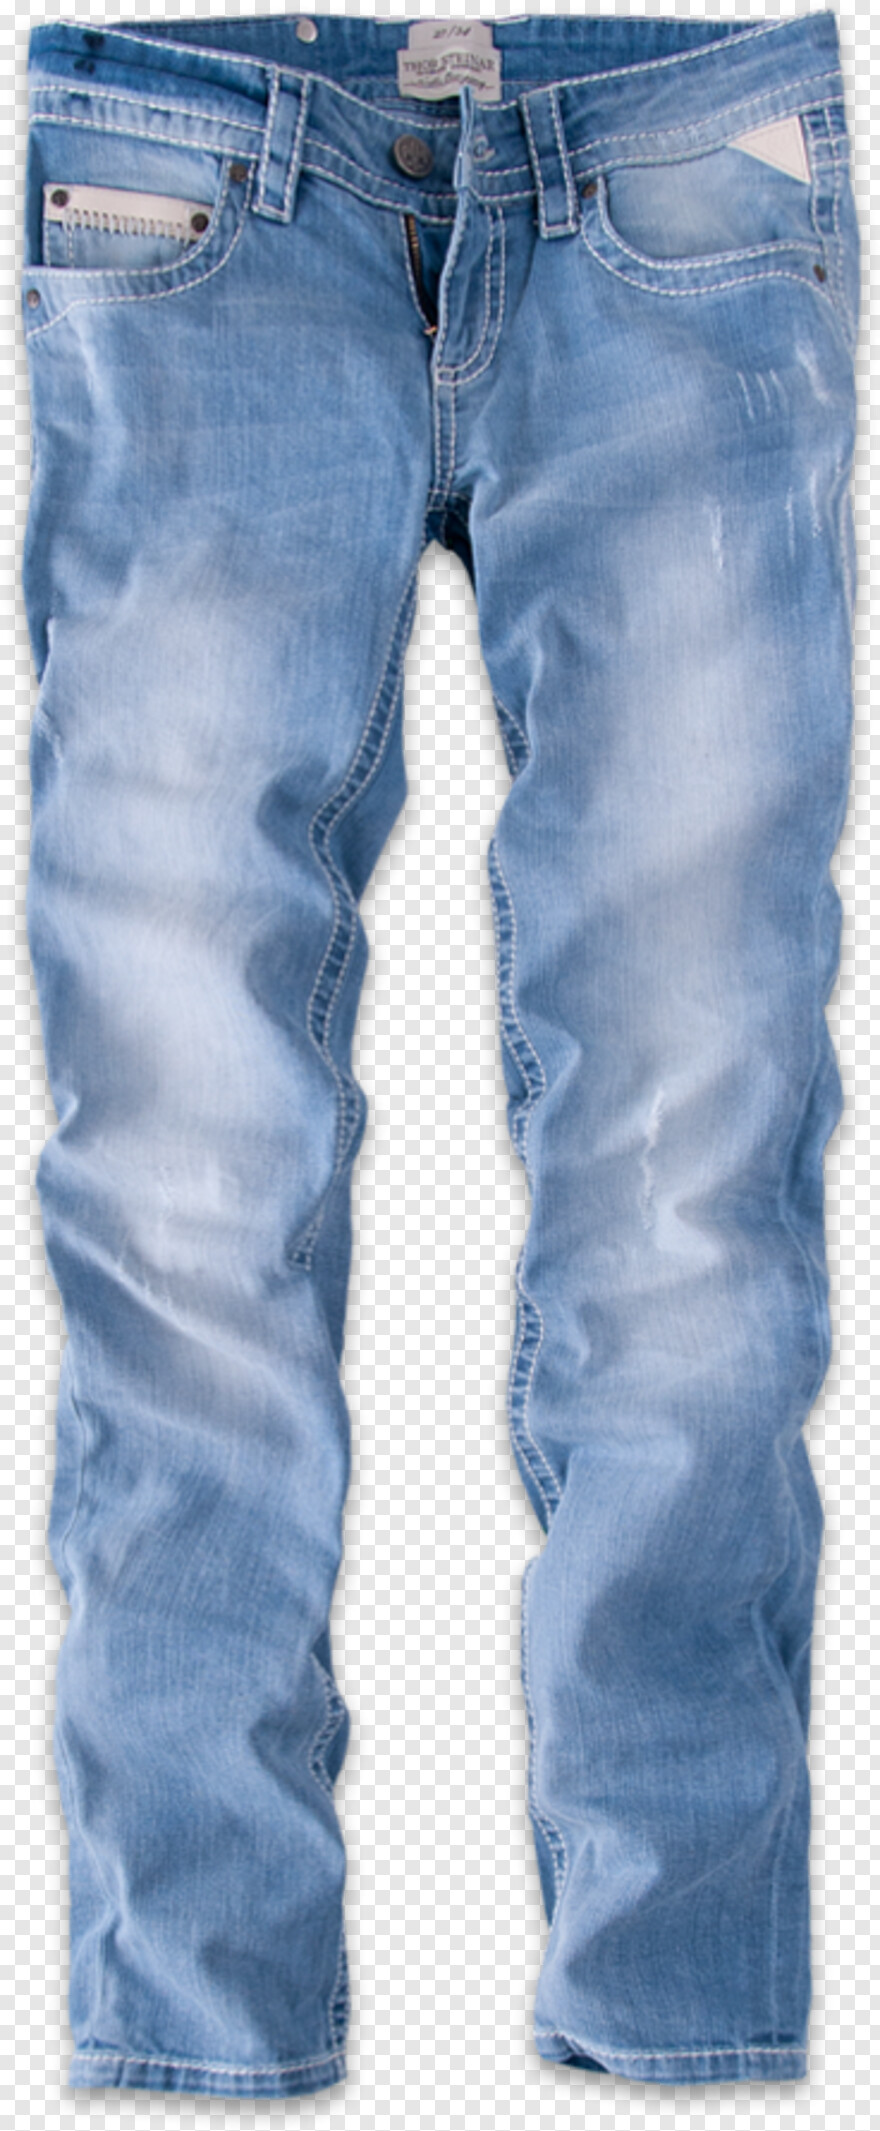 jeans-pant # 342966